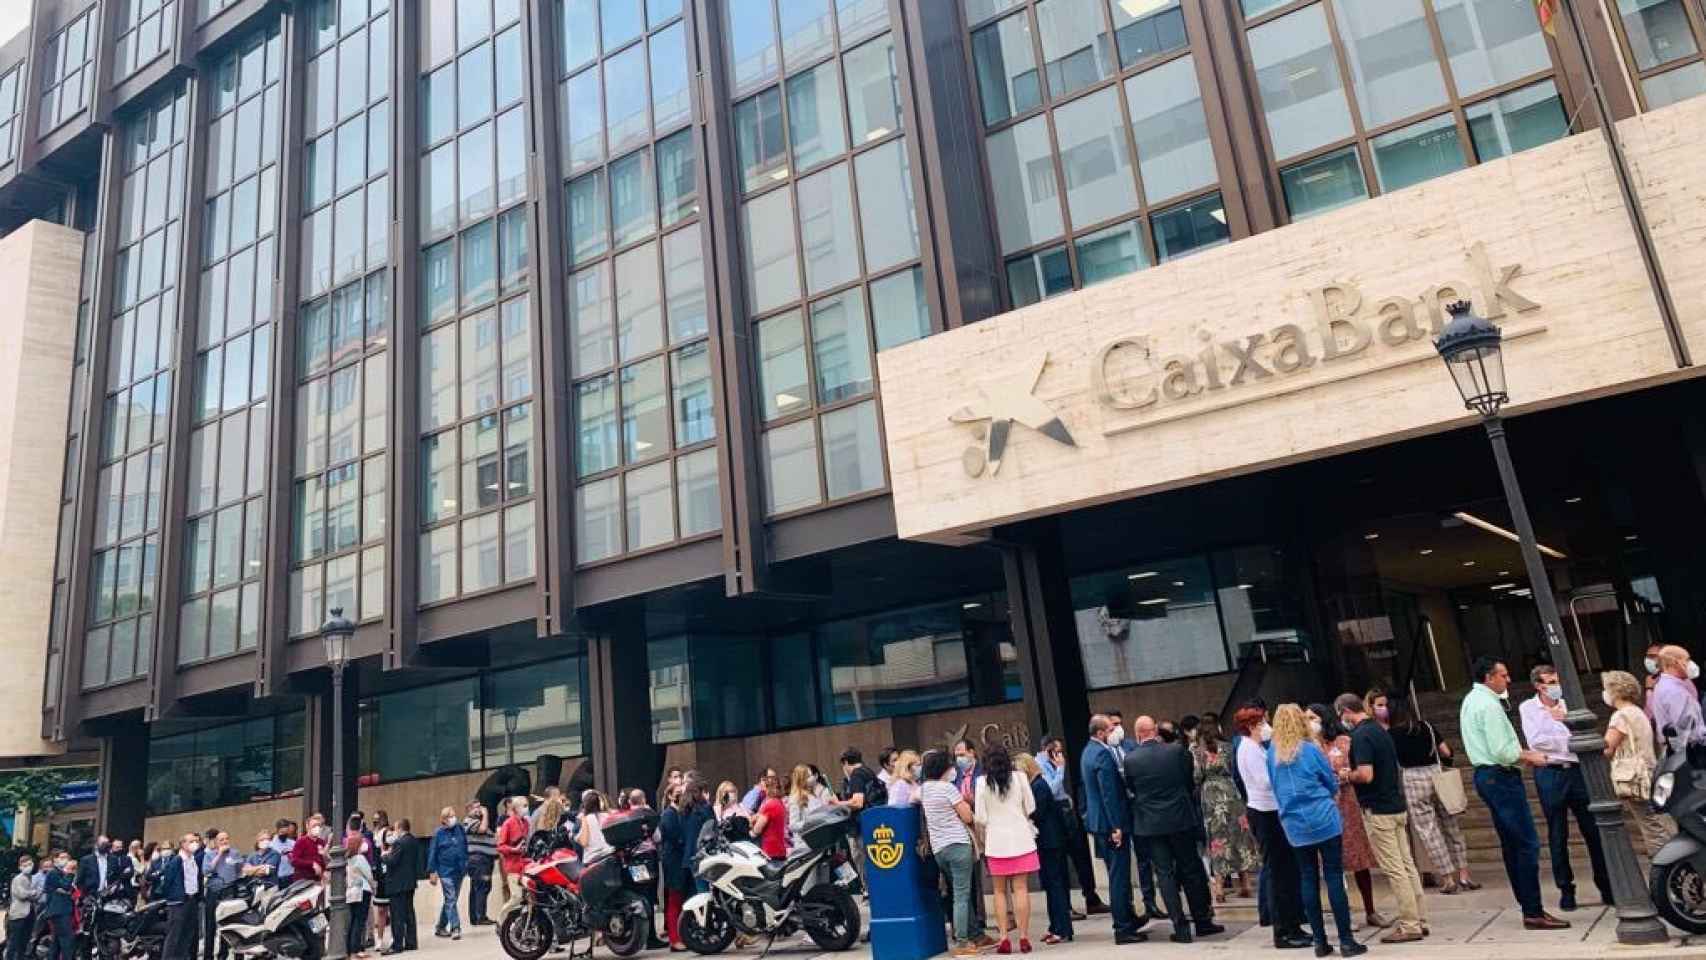 Los trabajadores de CaixaBank realizan paros parciales y se concentran frente a las sedes del banco en protesta por el ERE.